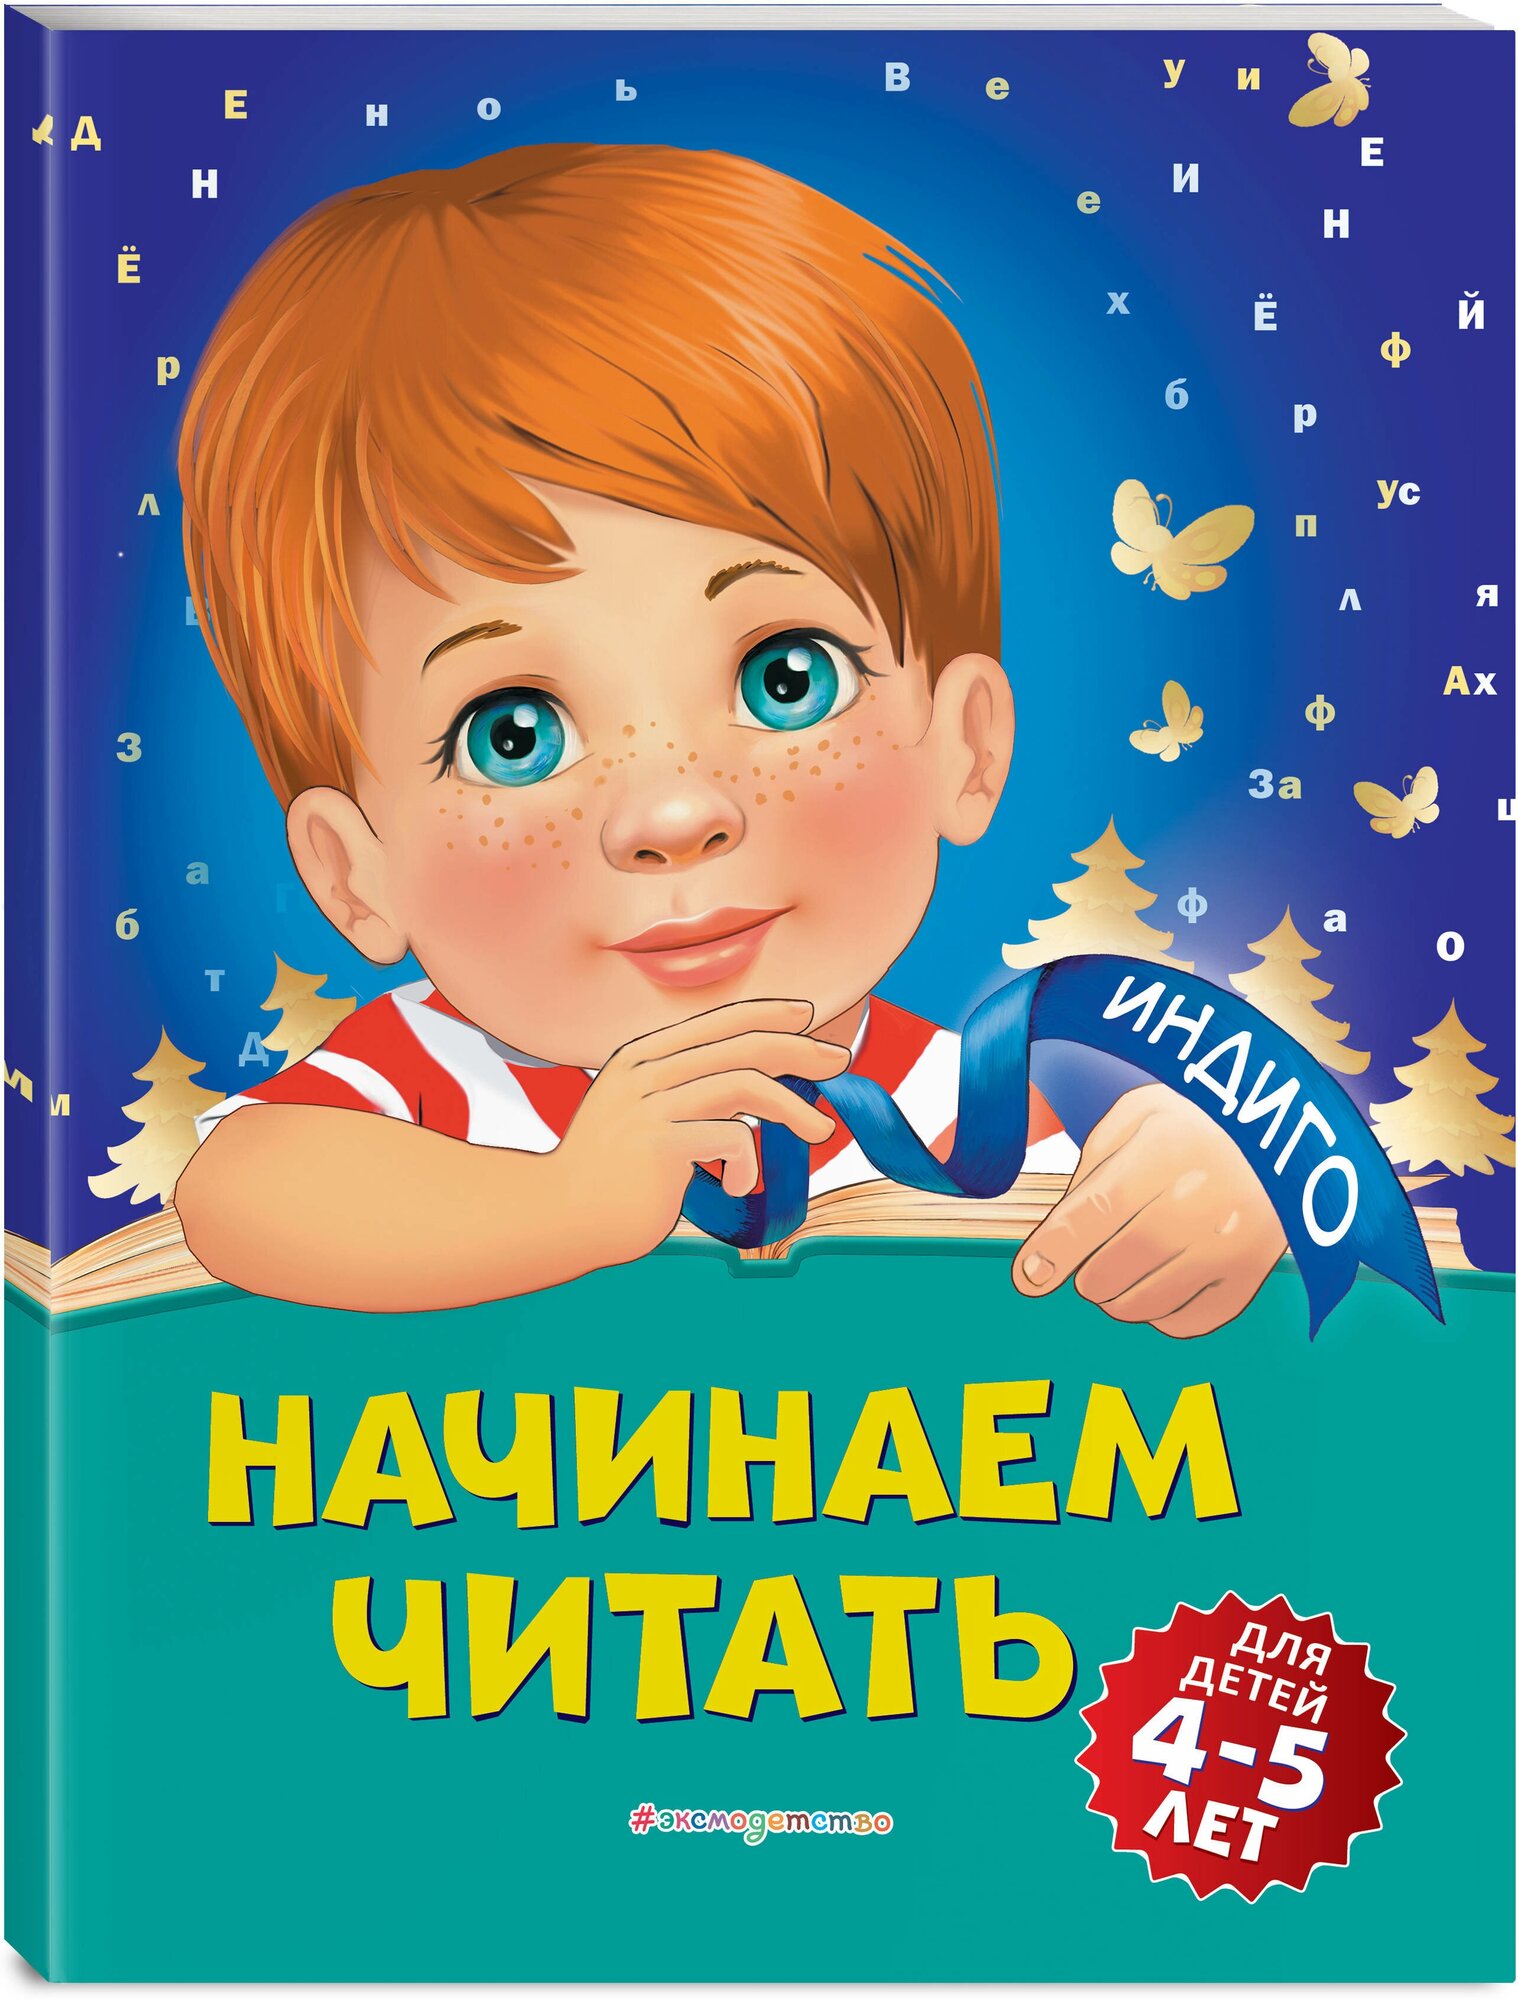 Пономарева А. В. Начинаем читать: для детей 4-5 лет